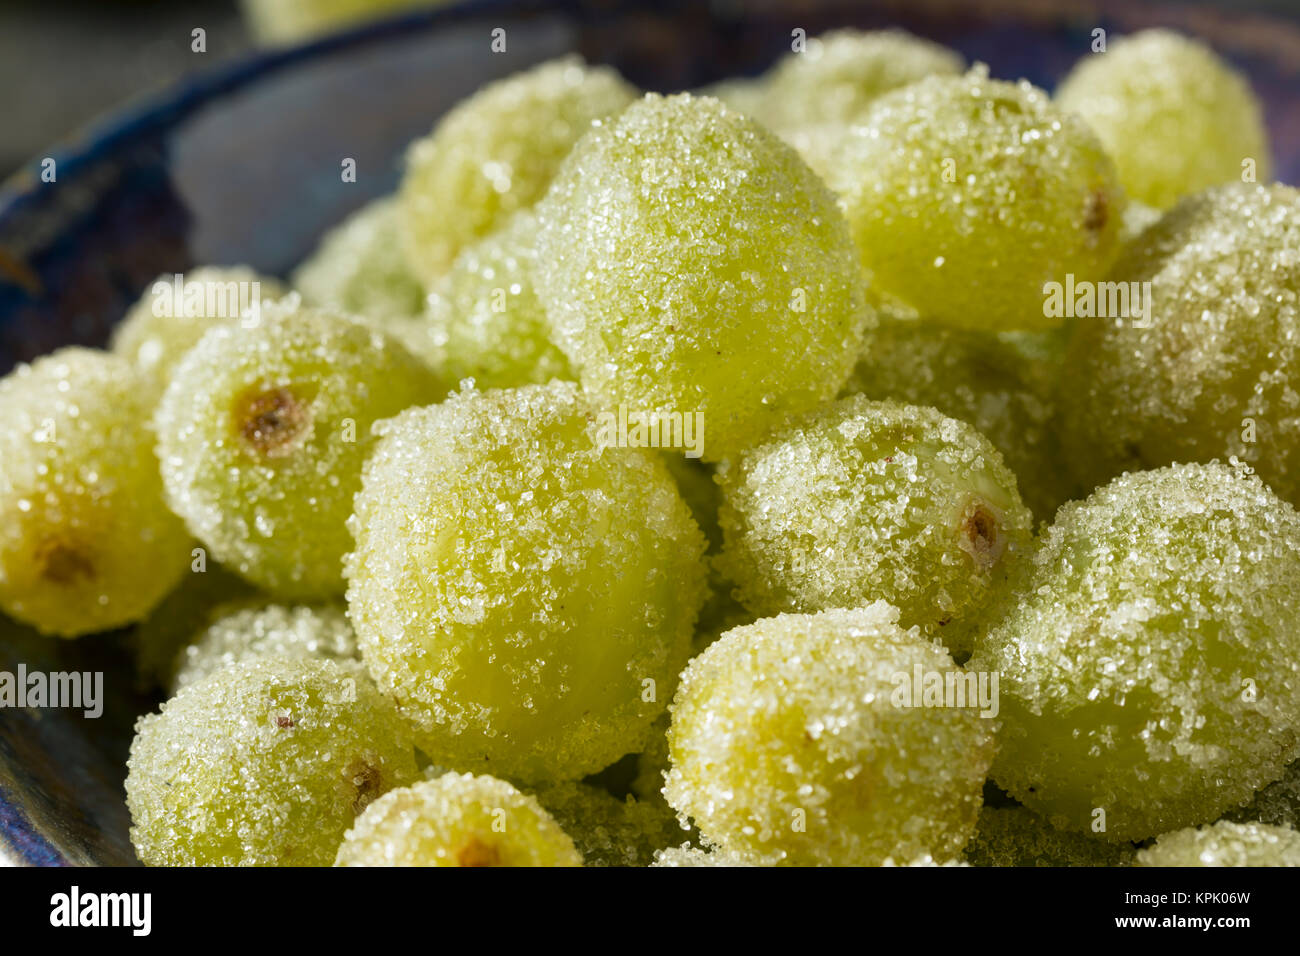 Boozy Sugared Prosecco Grapes in a Bowl for Dessert Stock Photo